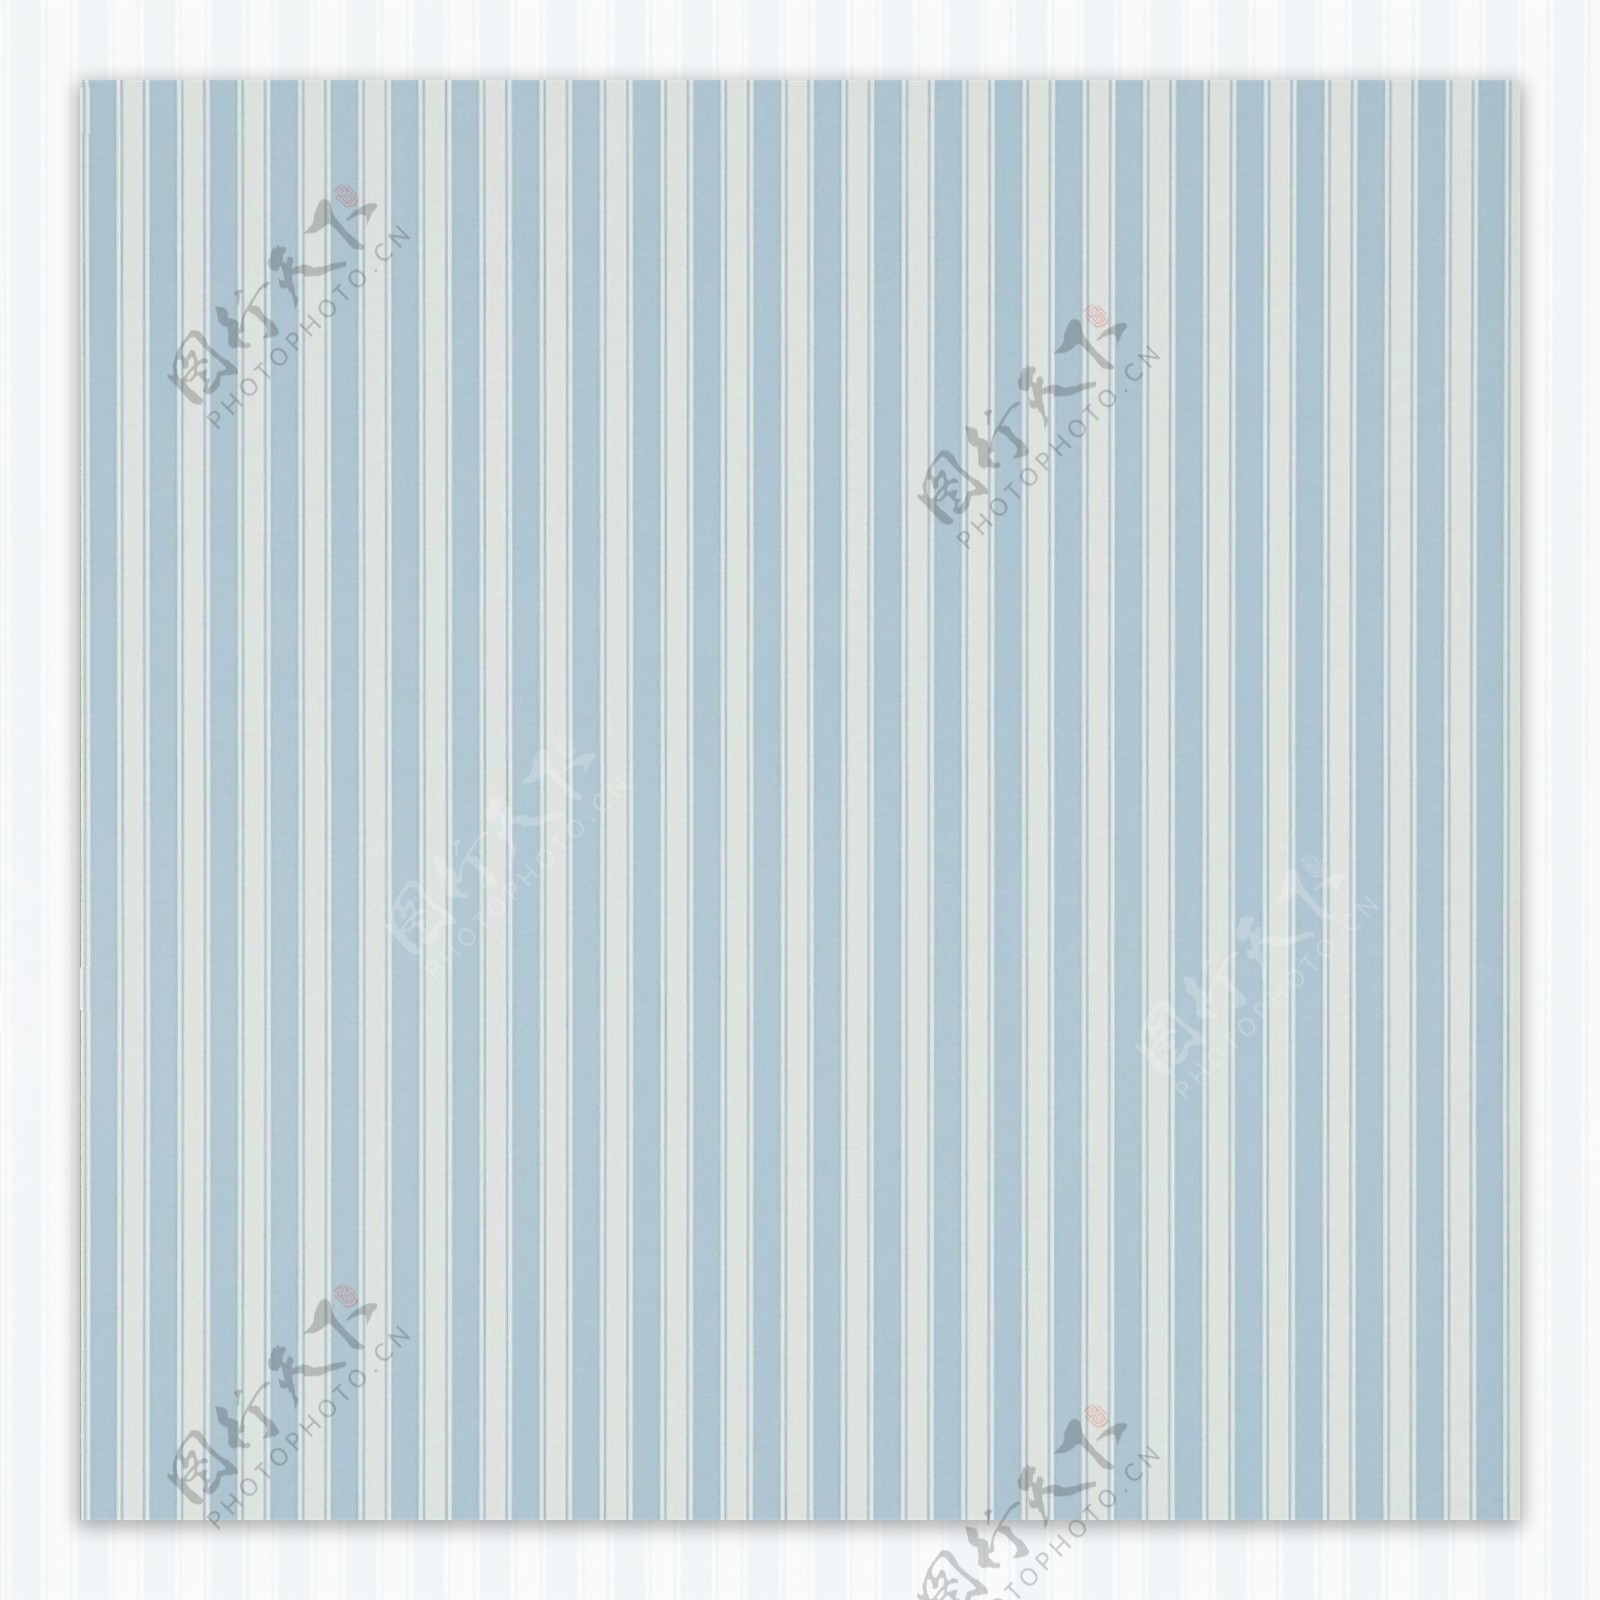 蓝白相间条纹壁纸素材